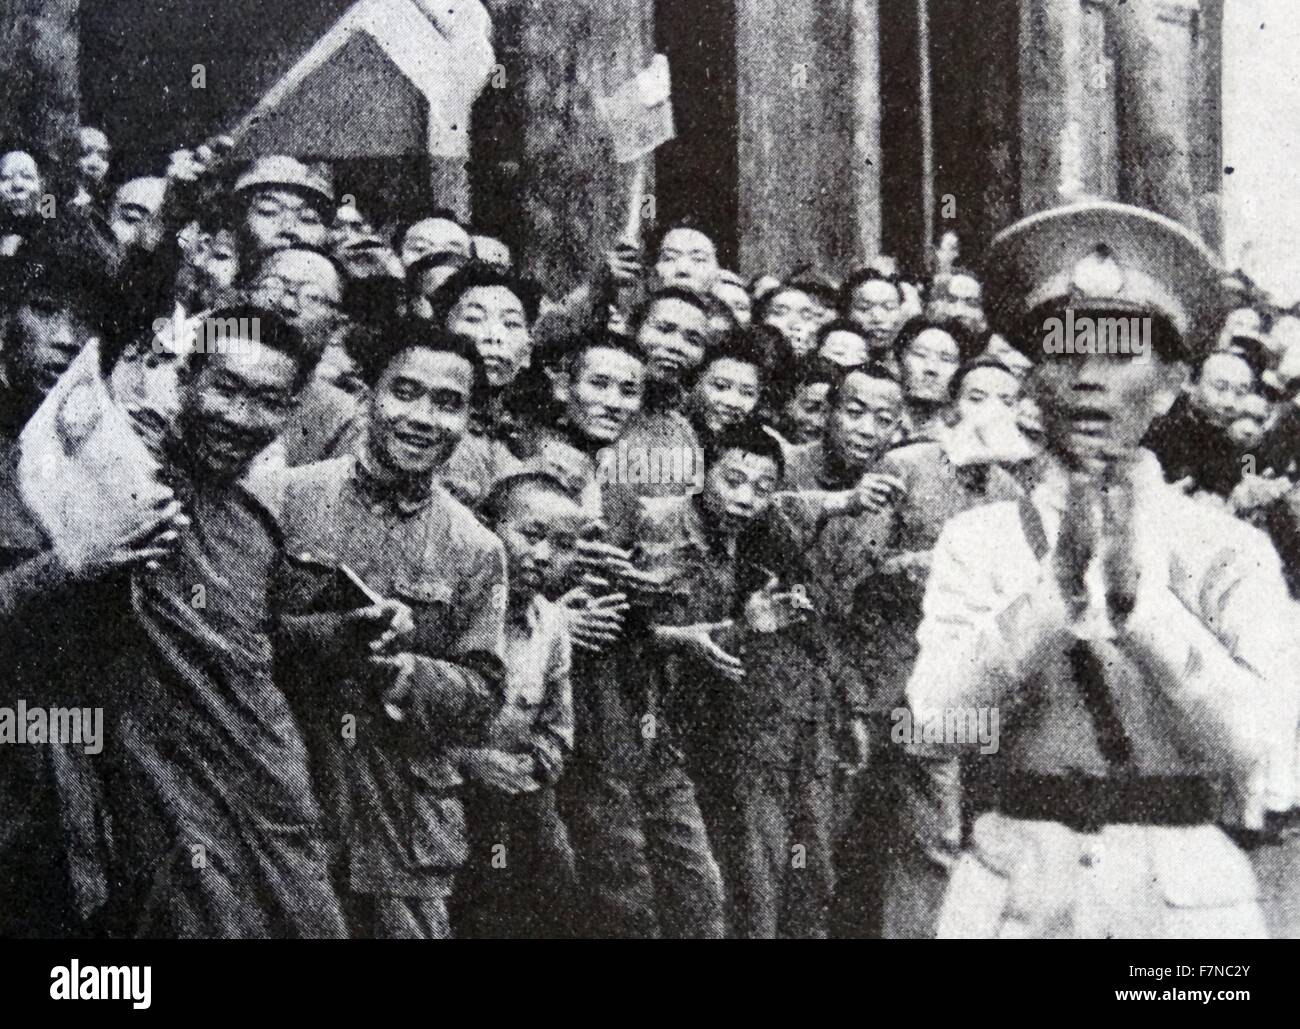 Photographie de la population de Chungking se félicitant de la Mission parlementaire britannique à l'invitation du Général Chiang Kai-shek (1887-1975). Datée 1942 Banque D'Images